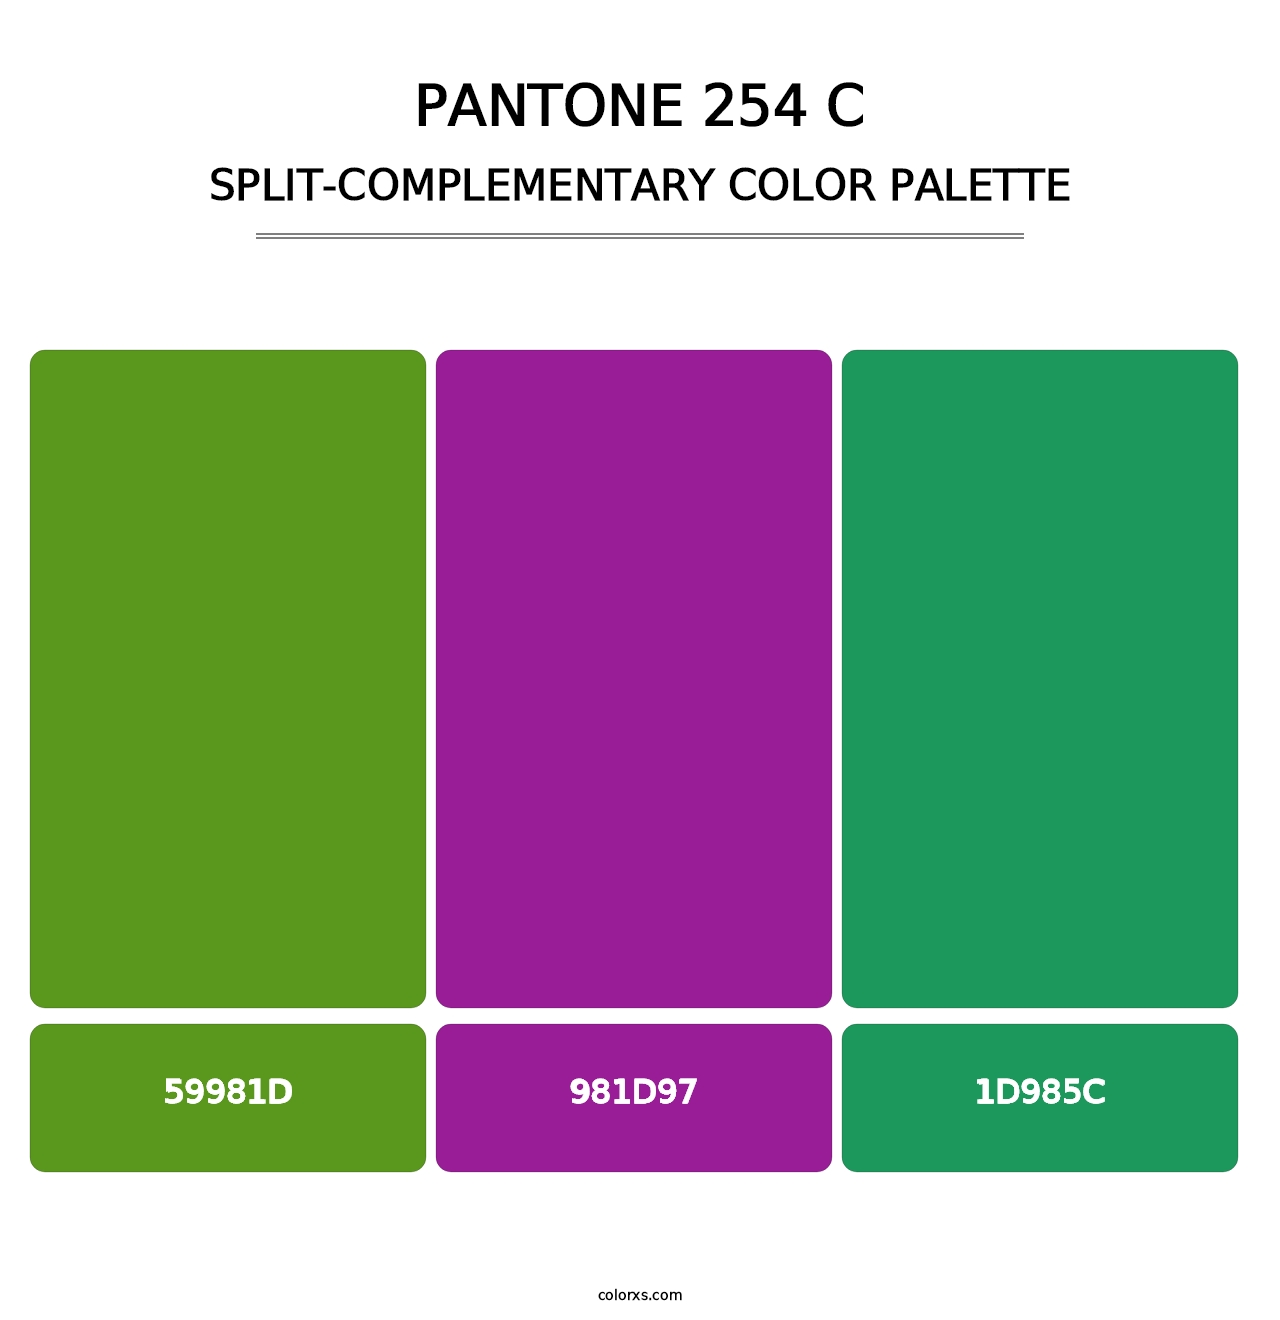 PANTONE 254 C - Split-Complementary Color Palette